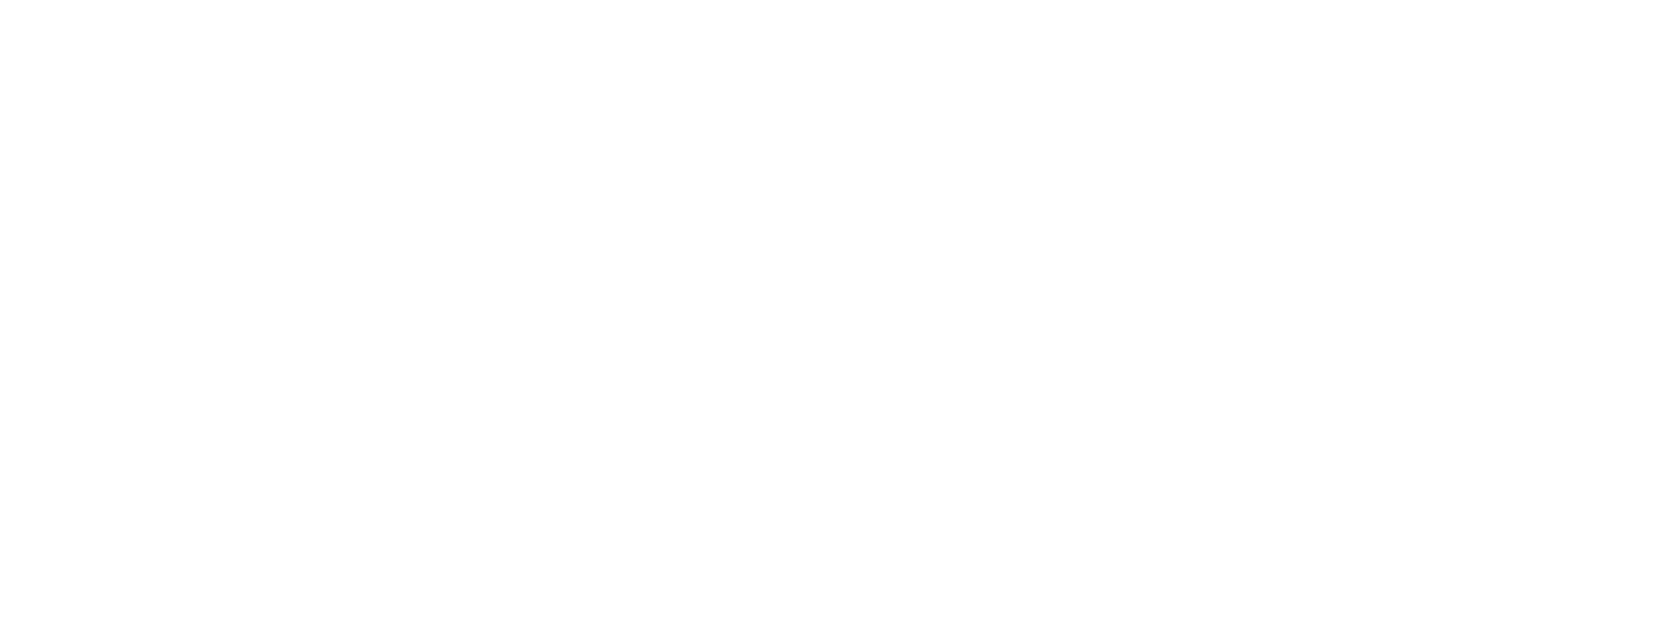 Кейс сервиса BRANDNATION - Ребрендинг платежной системы. Брендинговое агентство BRANDNATION в Москве и Санкт-Петербурге. Услуги: разработка логотипа и фирменного стиля, дизайн упаковки, брендбук, ребрендинг, разработка сайта.